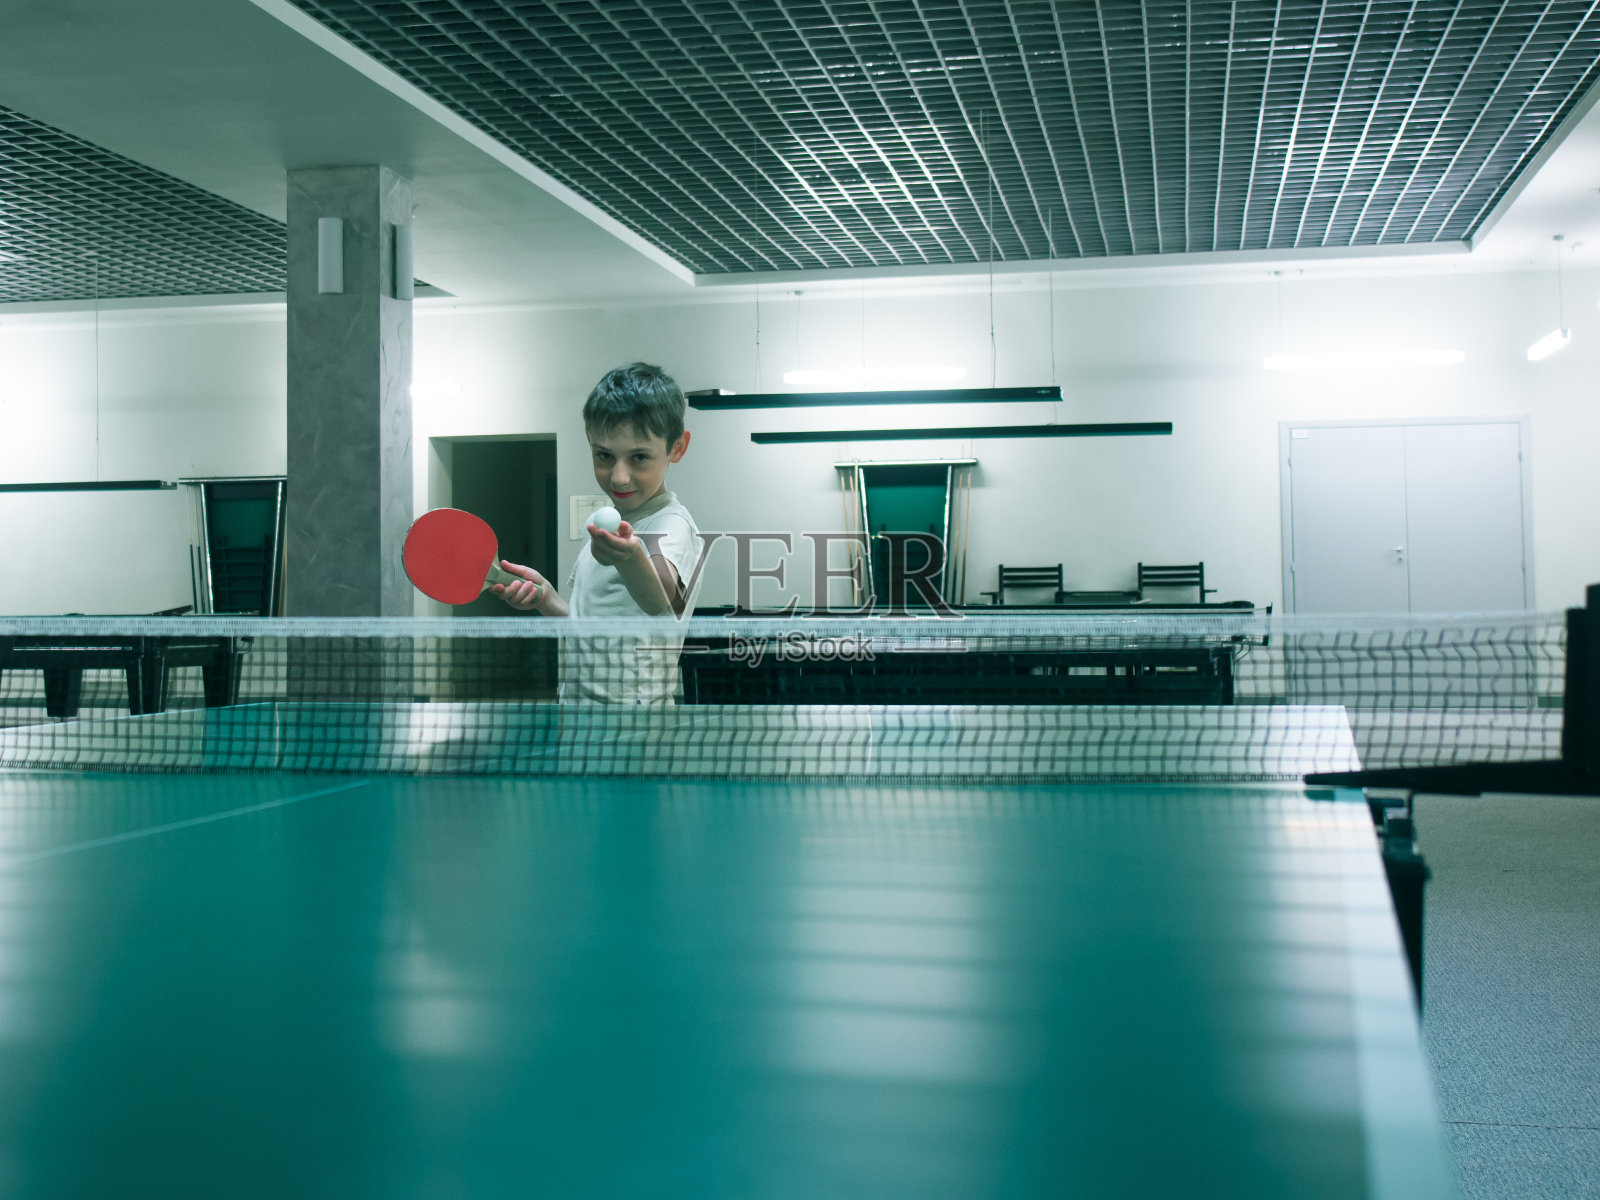 一个小男孩在一件t恤谁拿着网球球拍和球在网球桌上和空房间色调的形象照片摄影图片